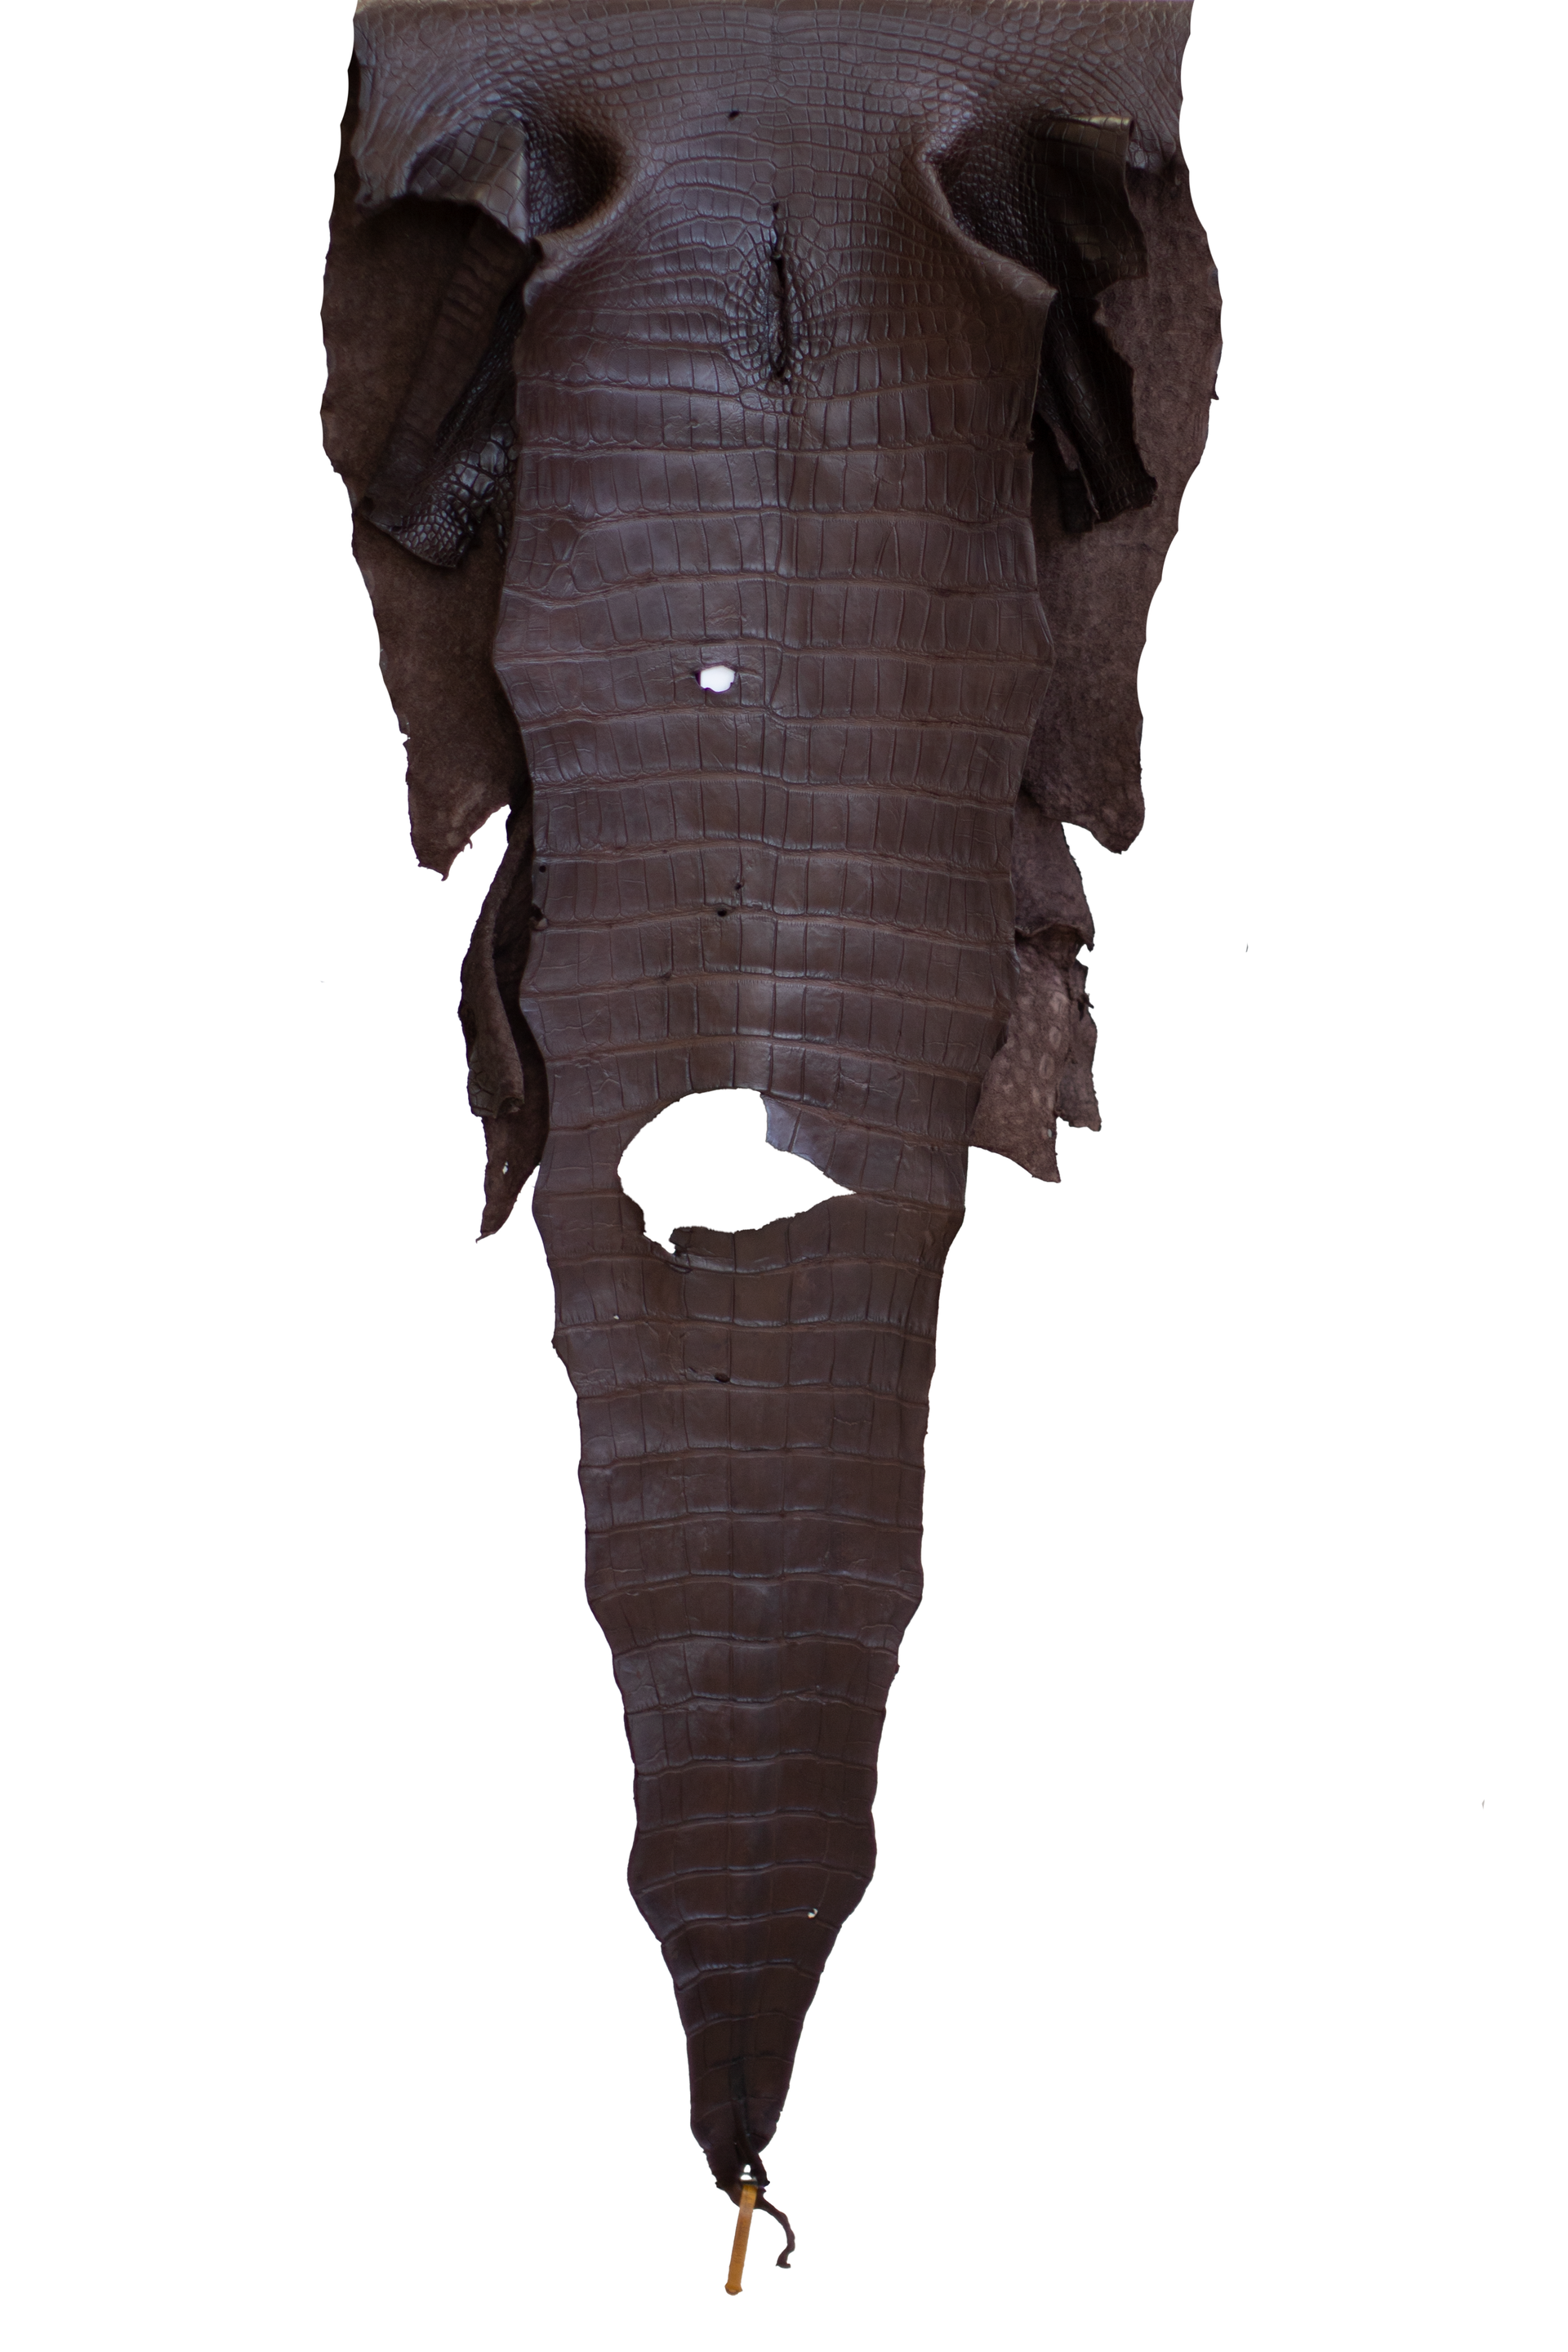 56 cm Grade 3/4 Ideal Brown Matte Wild American Alligator Leather - Tag: LA22-0020419